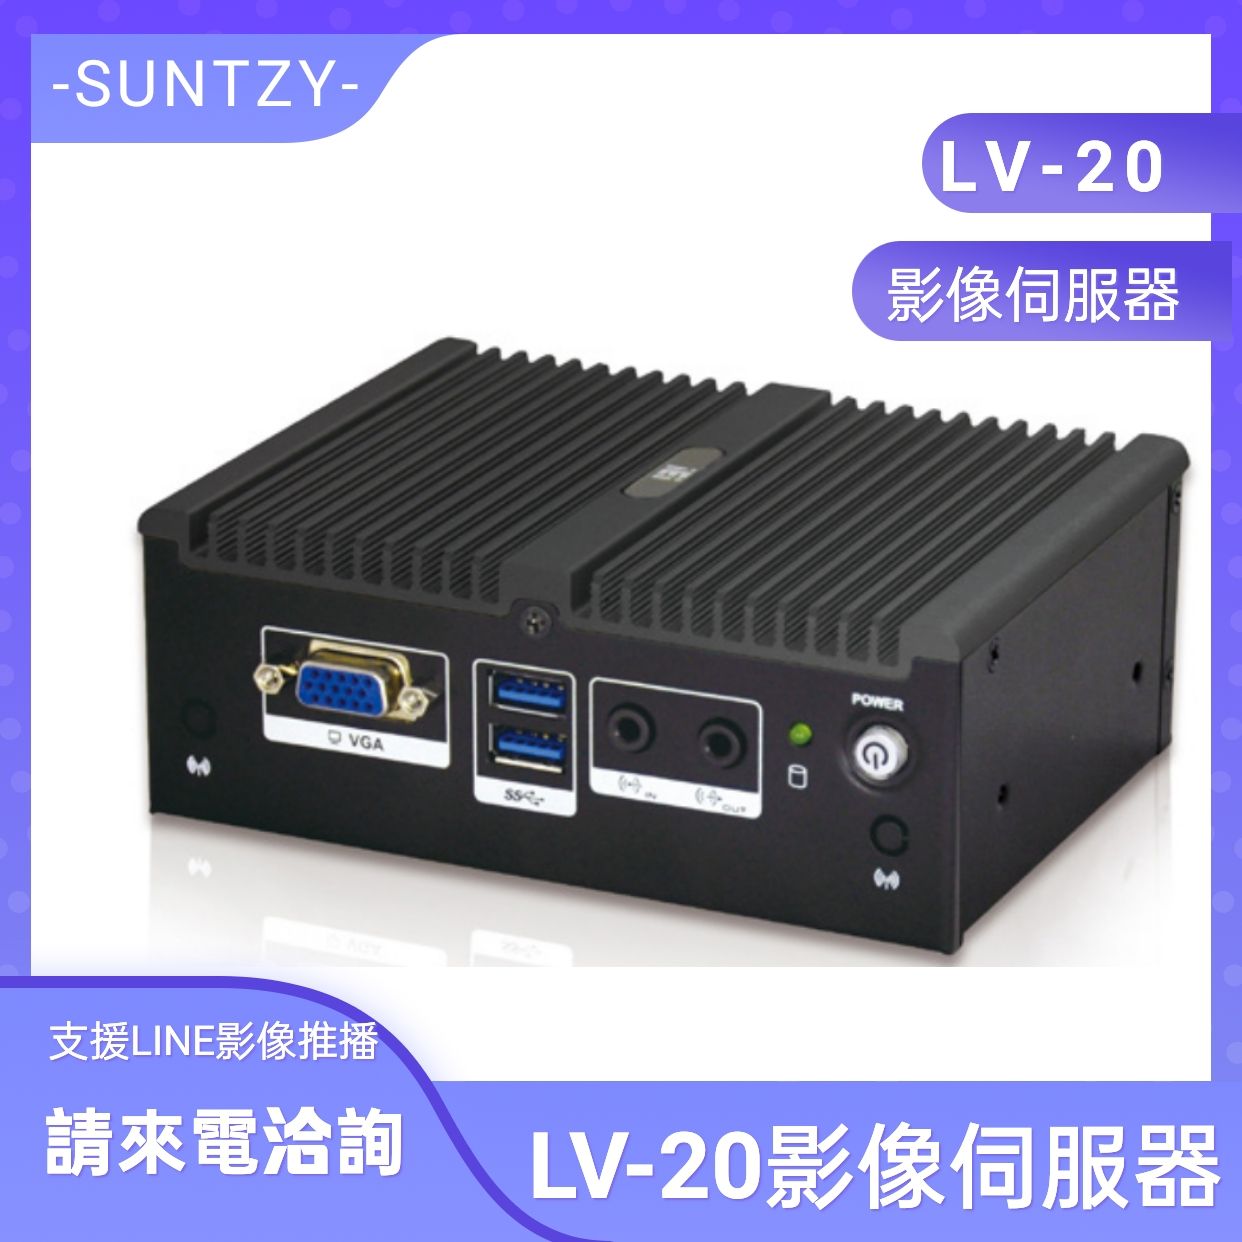 LV-20影像伺服器(支援30秒LINE影像推播)